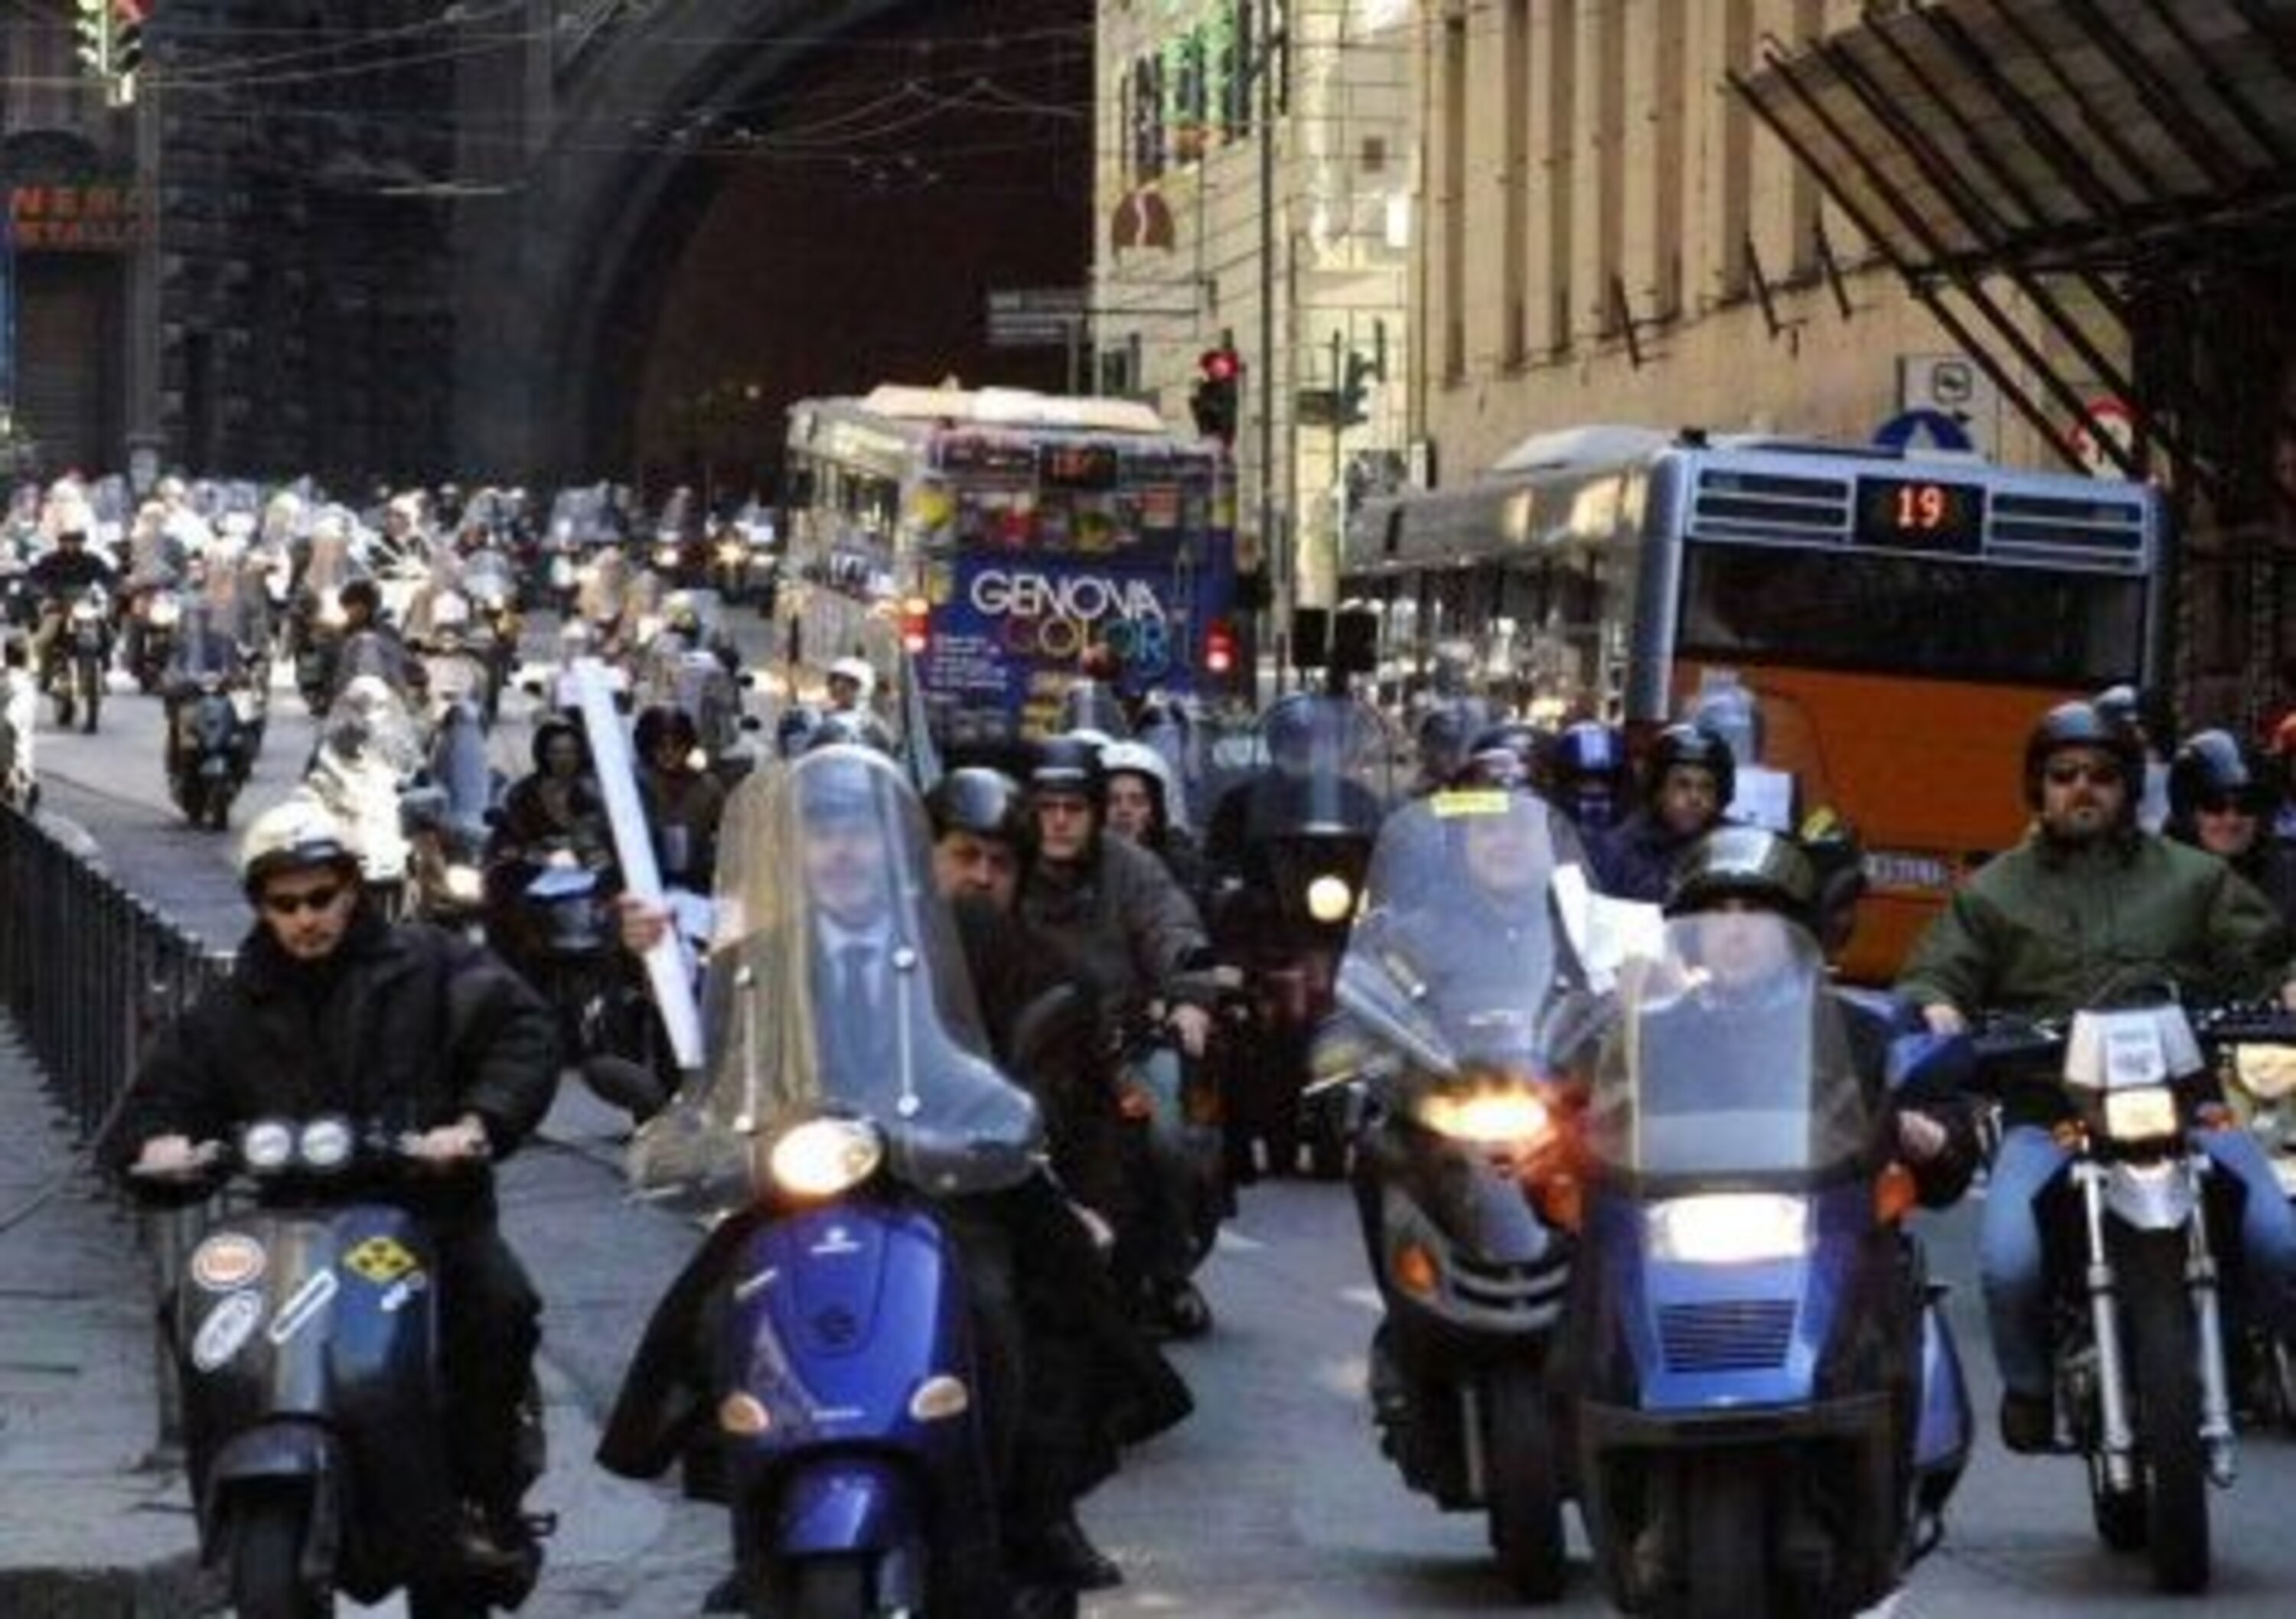 Genova: stop per smog alle moto, esentati i veicoli storici